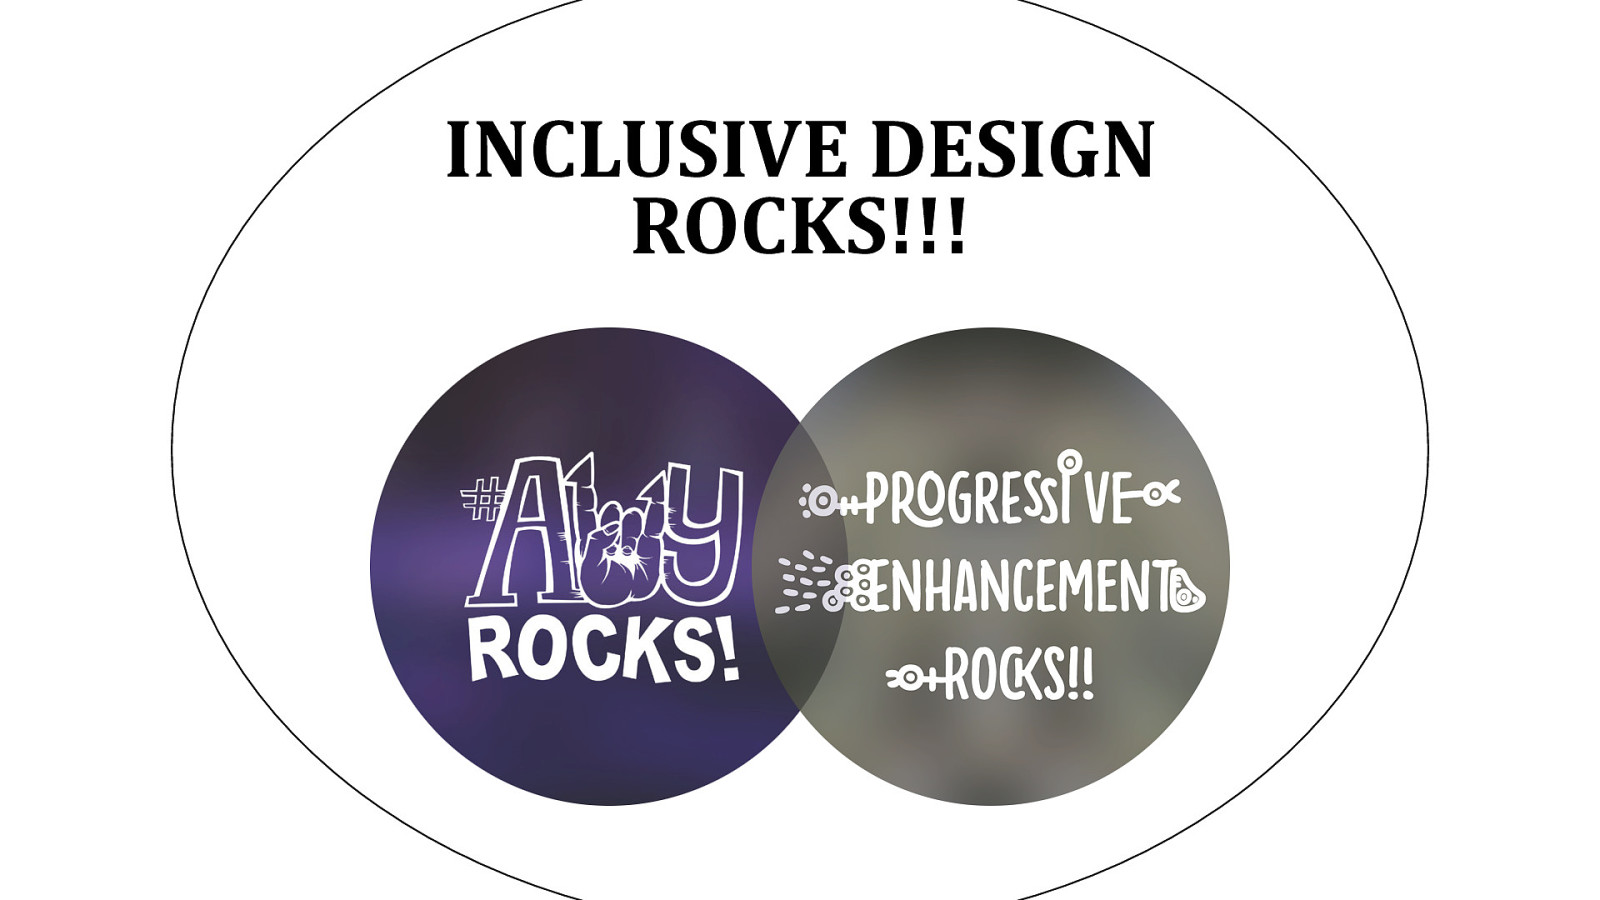 Inclusive design rocks!